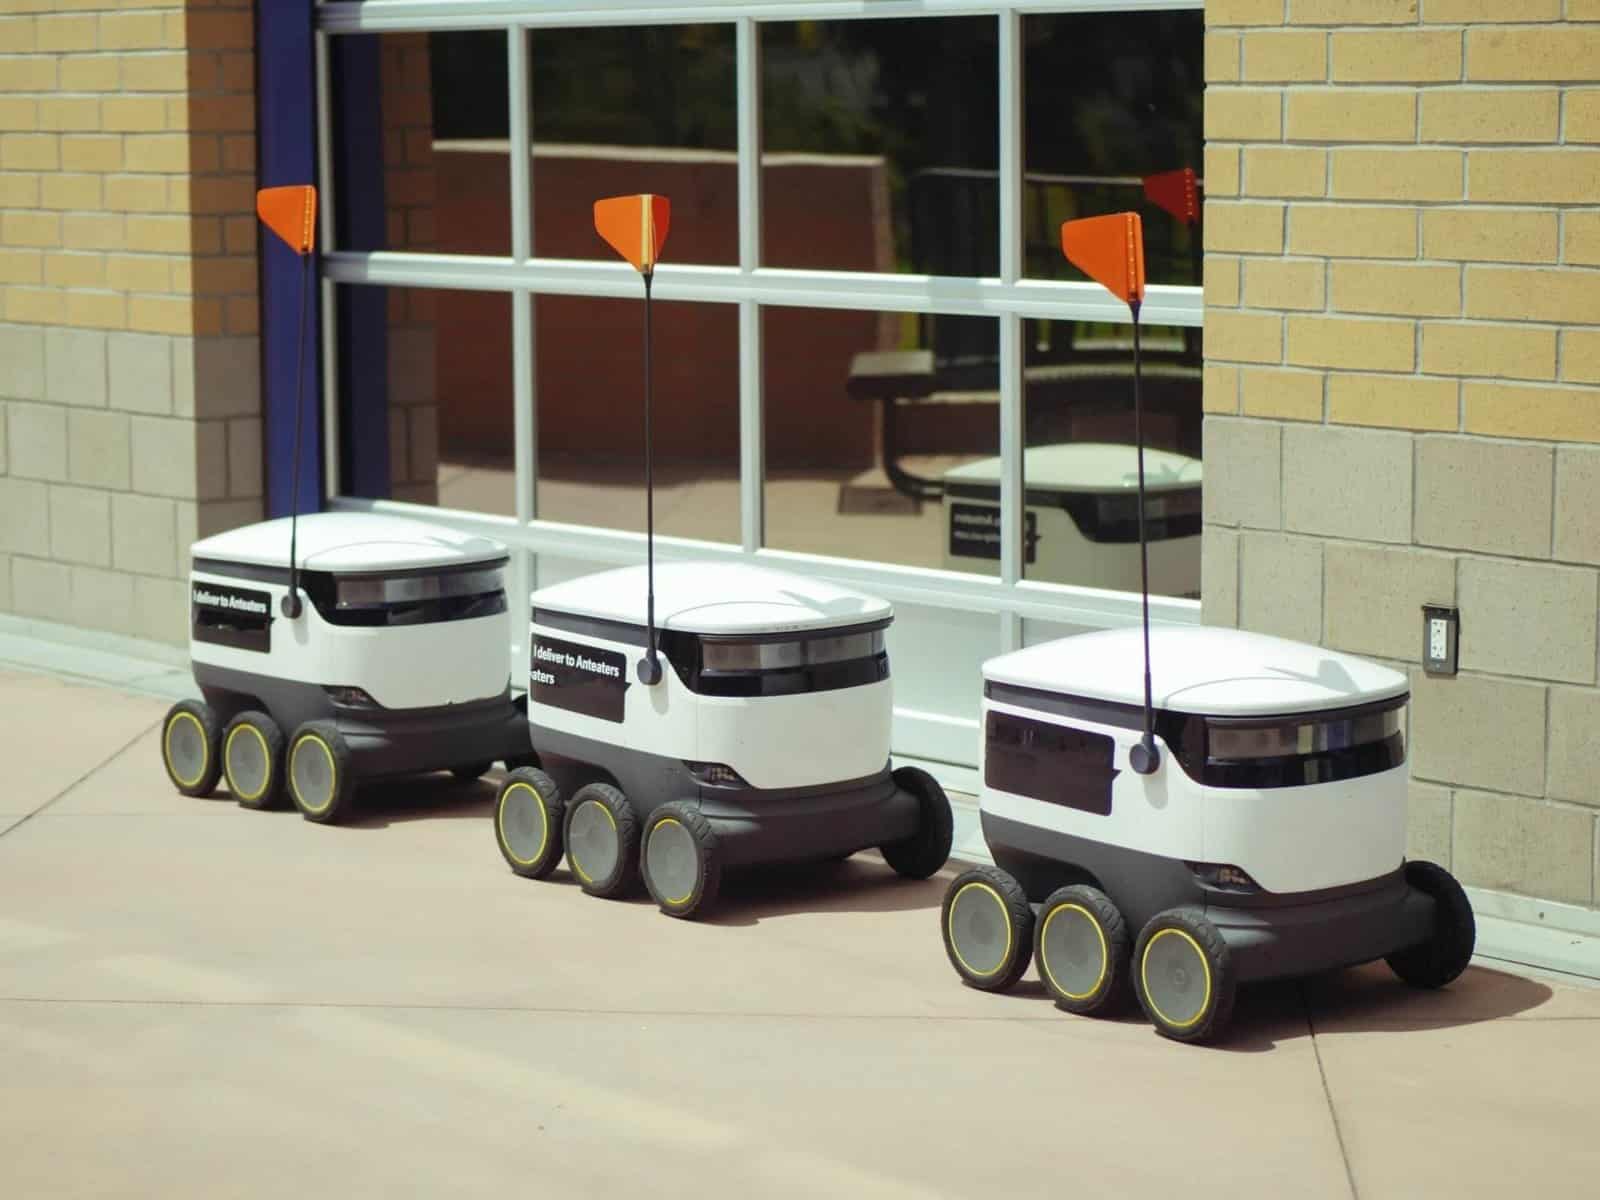 Autonomous bots